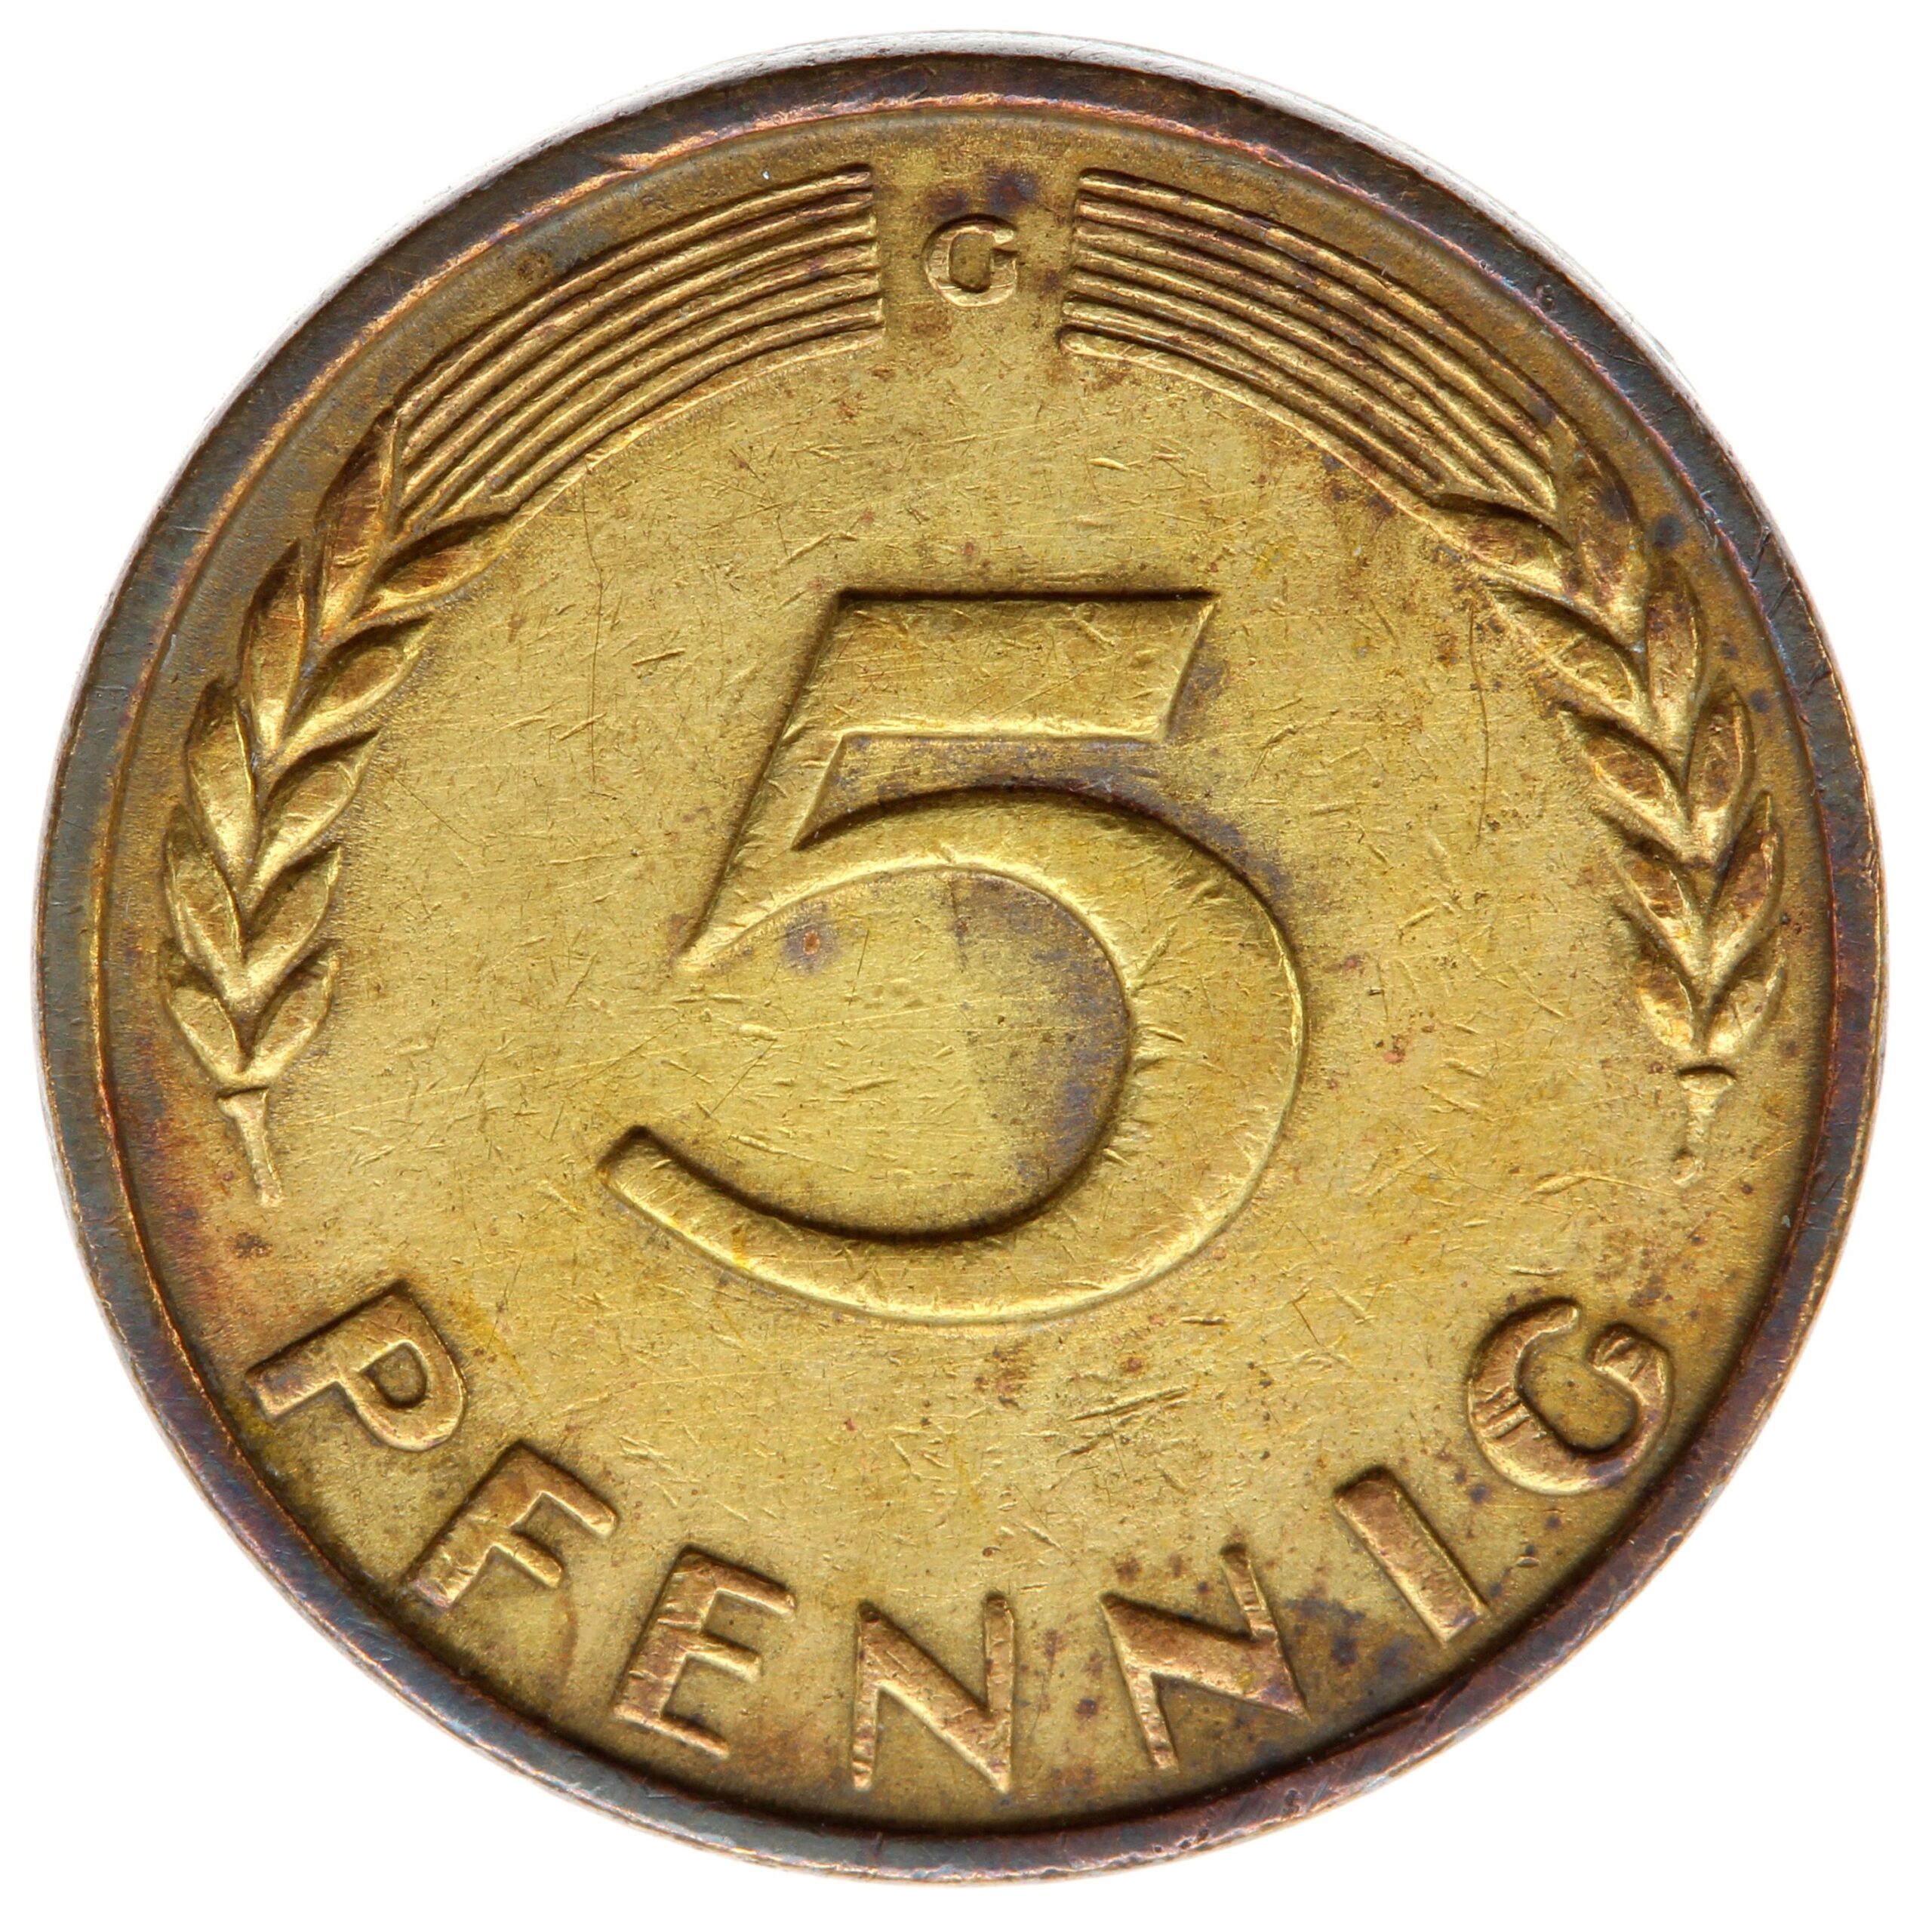 DE 5 Pfennig 1949 G